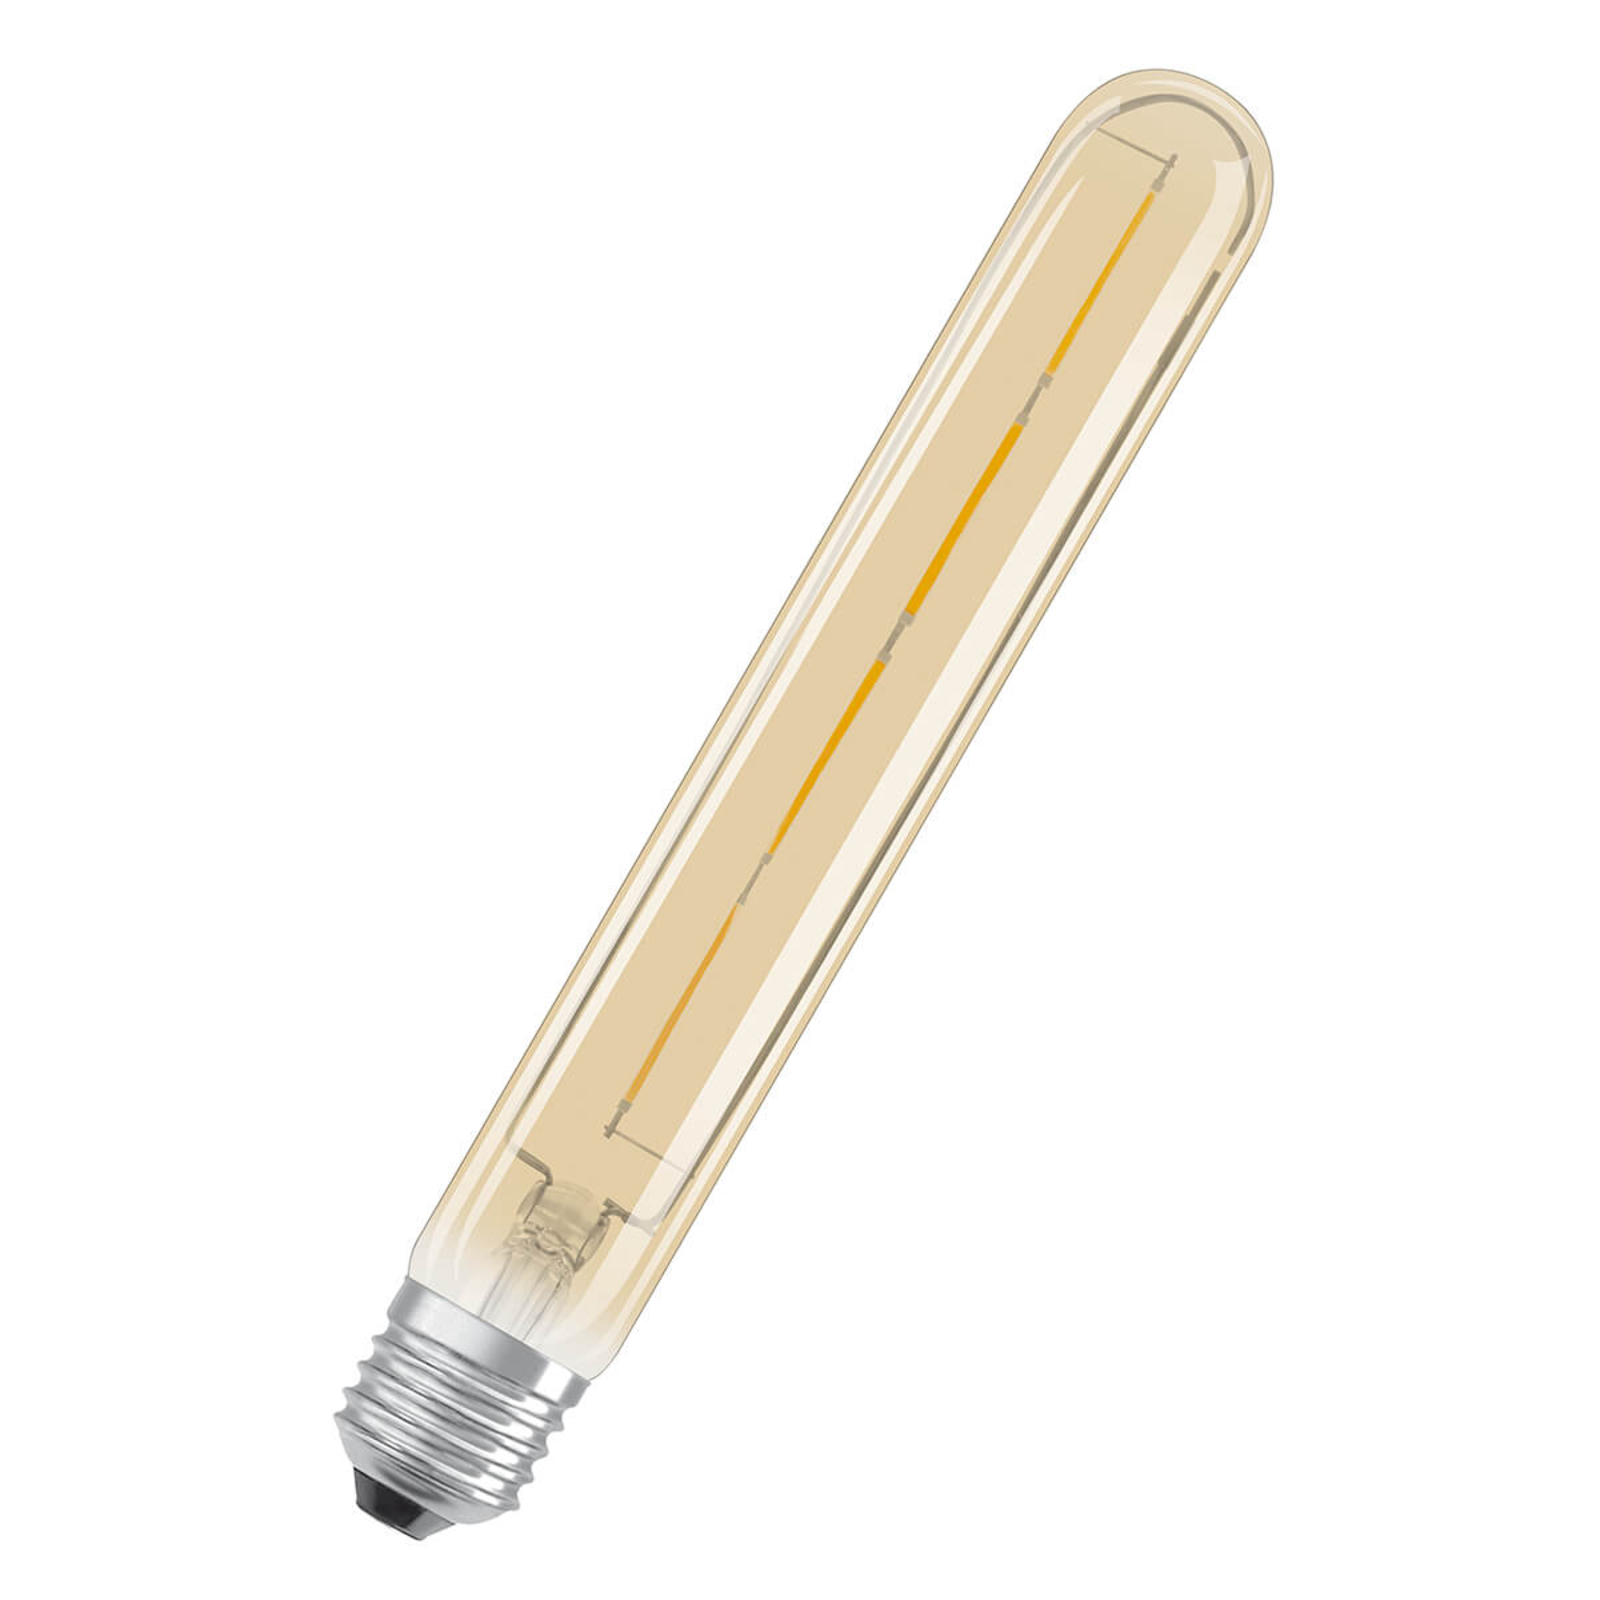 LED trubice zlatá E27 4W, teplá bílá, 400 lm